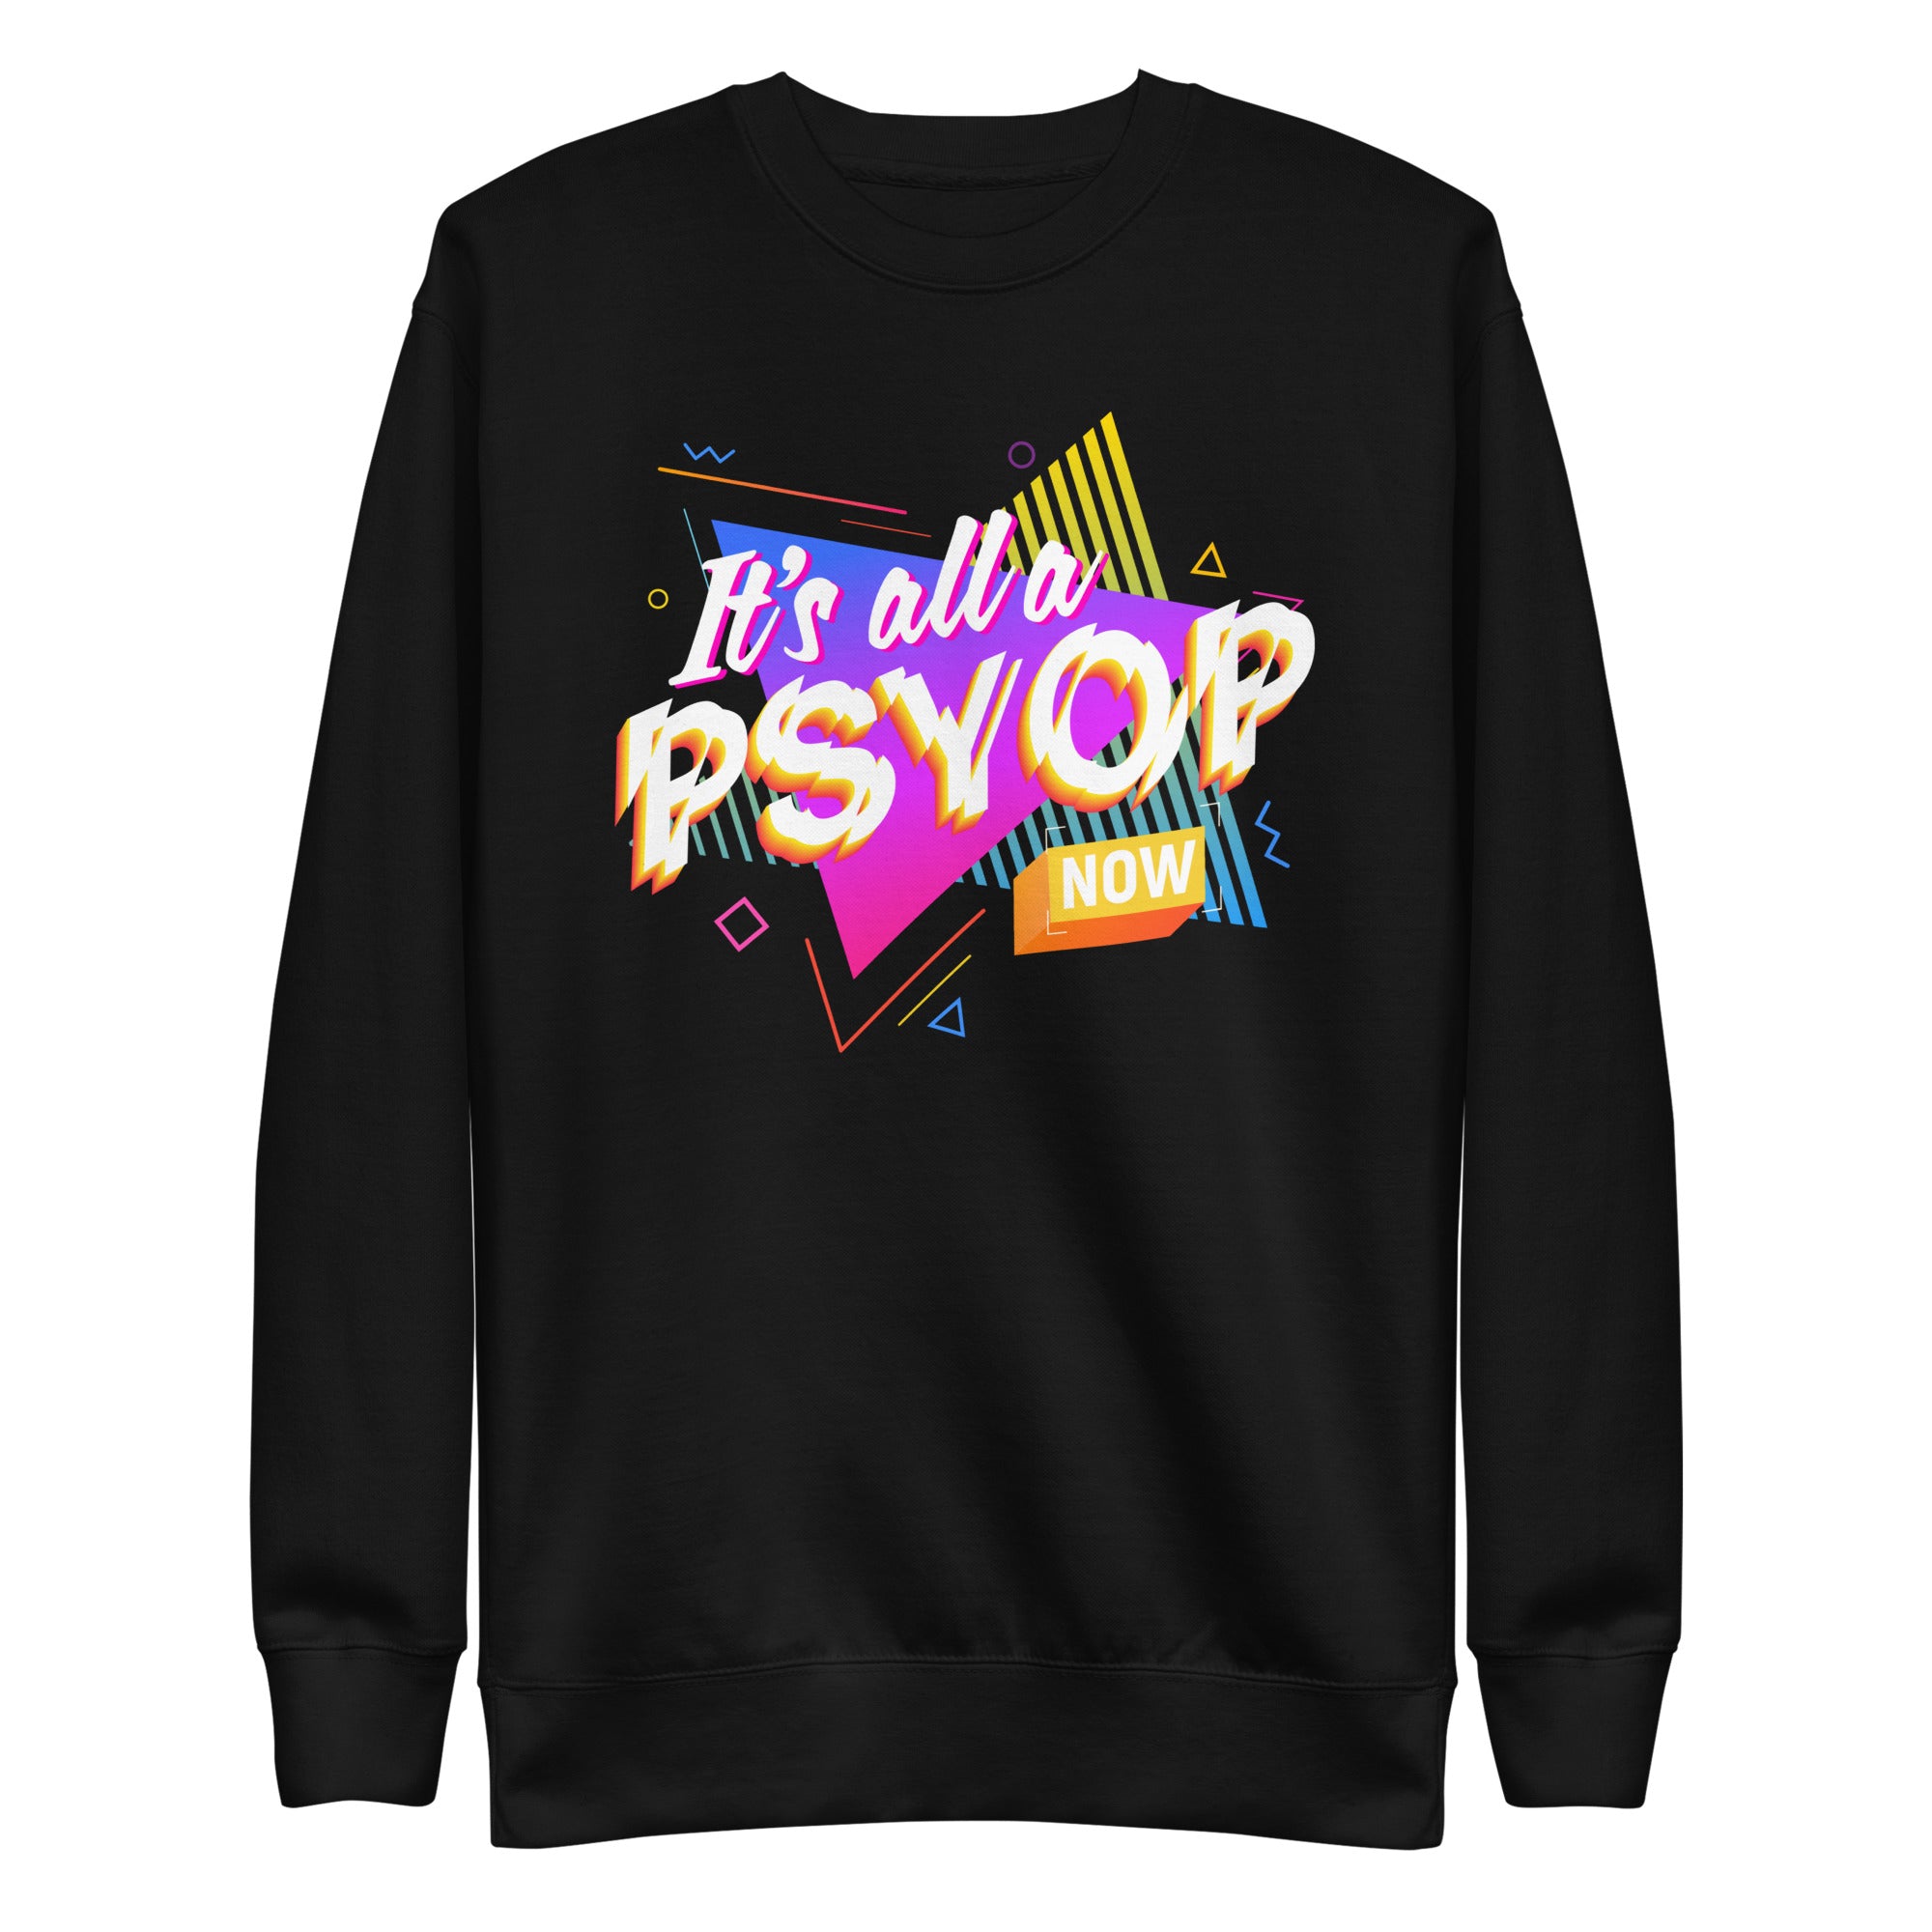 It's All a PSYOP Sweatshirt